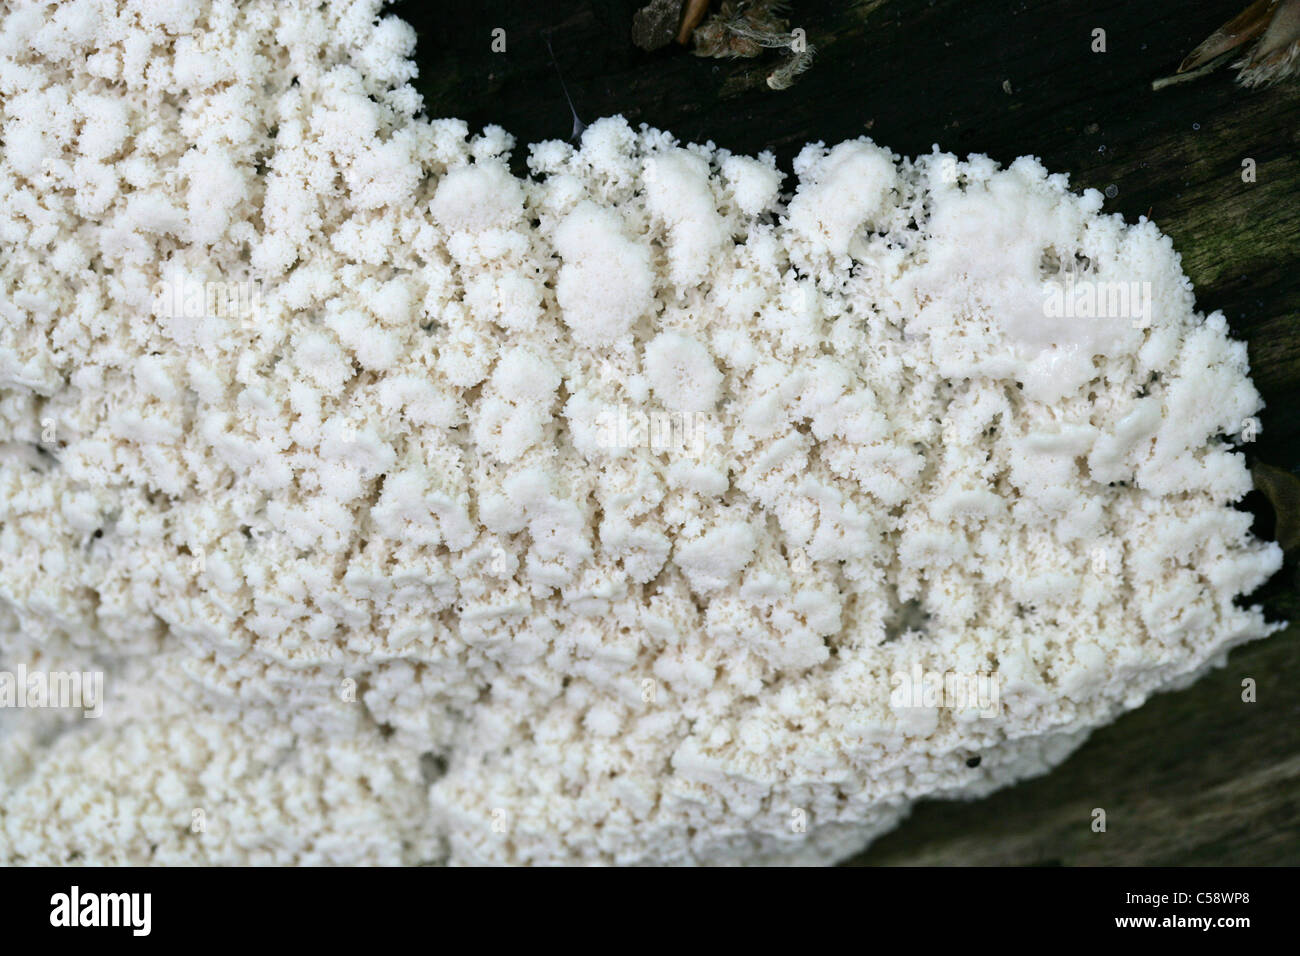 White Coral Slime or White-Finger Slime, Ceratiomyxa fruticulosa. Whippendell Woods, Hertfordshire, UK. Plasmoidal Stage. Stock Photo